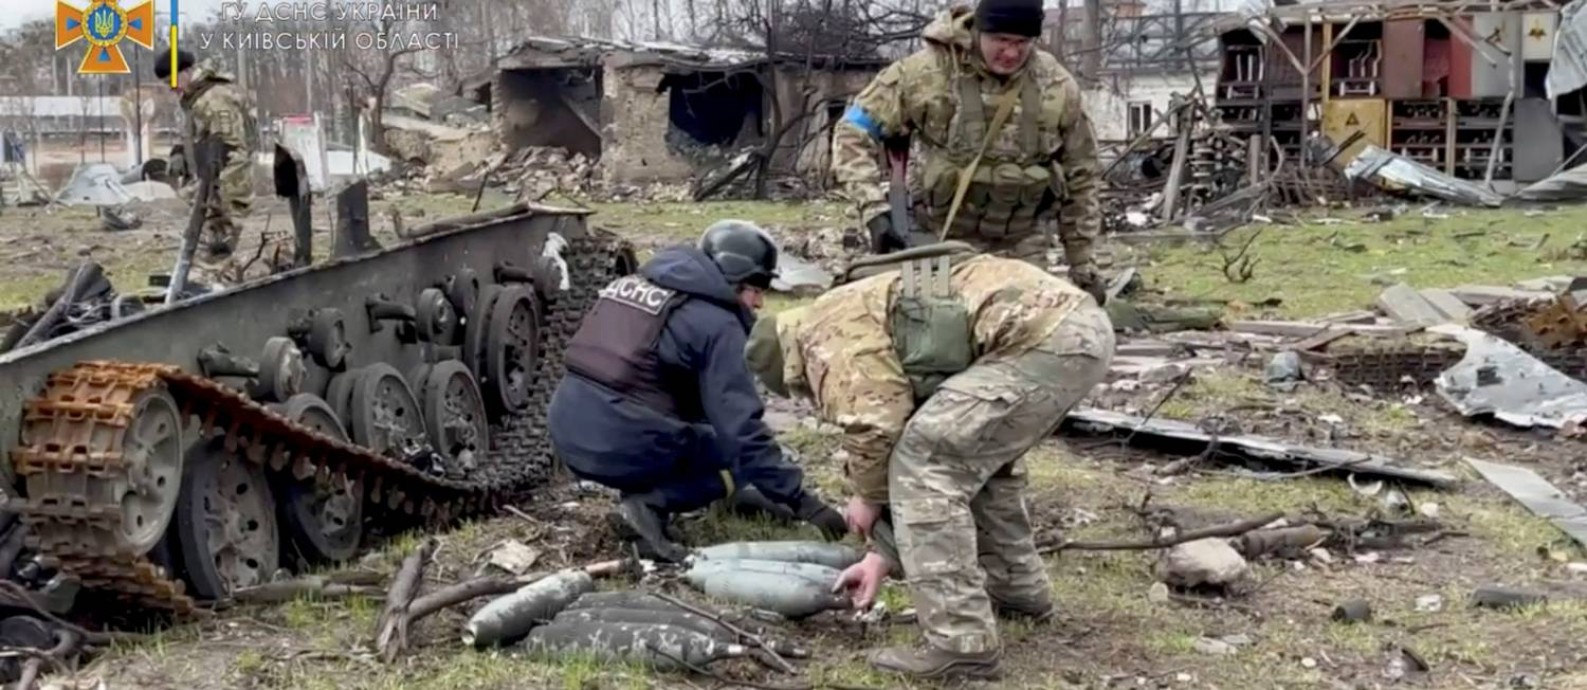 Membros do Serviço de Emergência da Ucrânia coletam munições após a retirada da Rússia em Bucha, Ucrânia Foto: SERVIÇO DE EMERGÊNCIA DA UCRÂNIA / via REUTERS